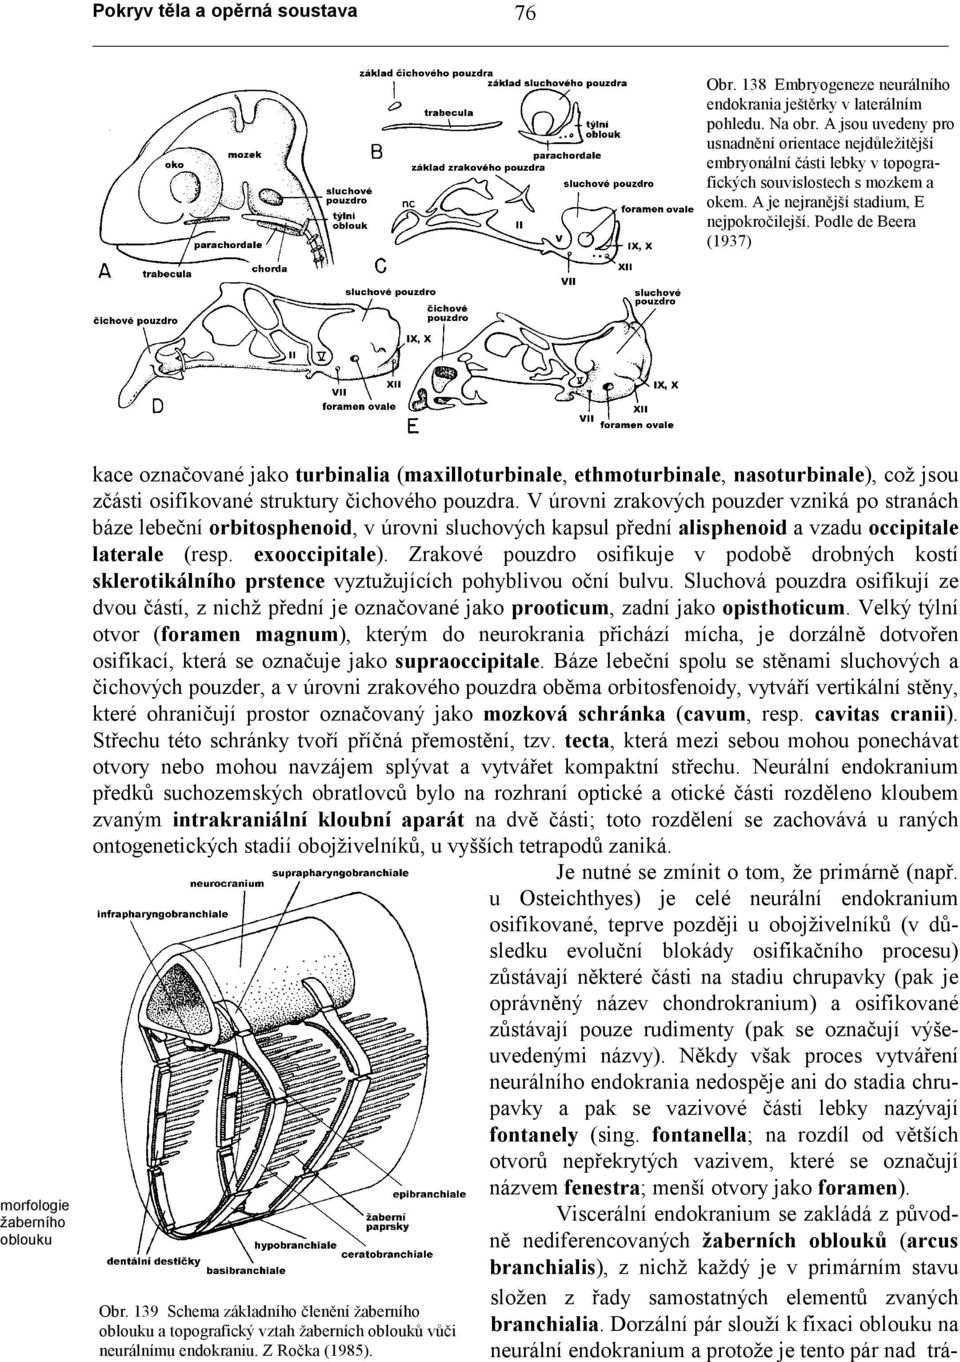 Podle de Beera (1937) morfologie žaberního oblouku kace označované jako turbinalia (maxilloturbinale, ethmoturbinale, nasoturbinale), což jsou zčásti osifikované struktury čichového pouzdra.